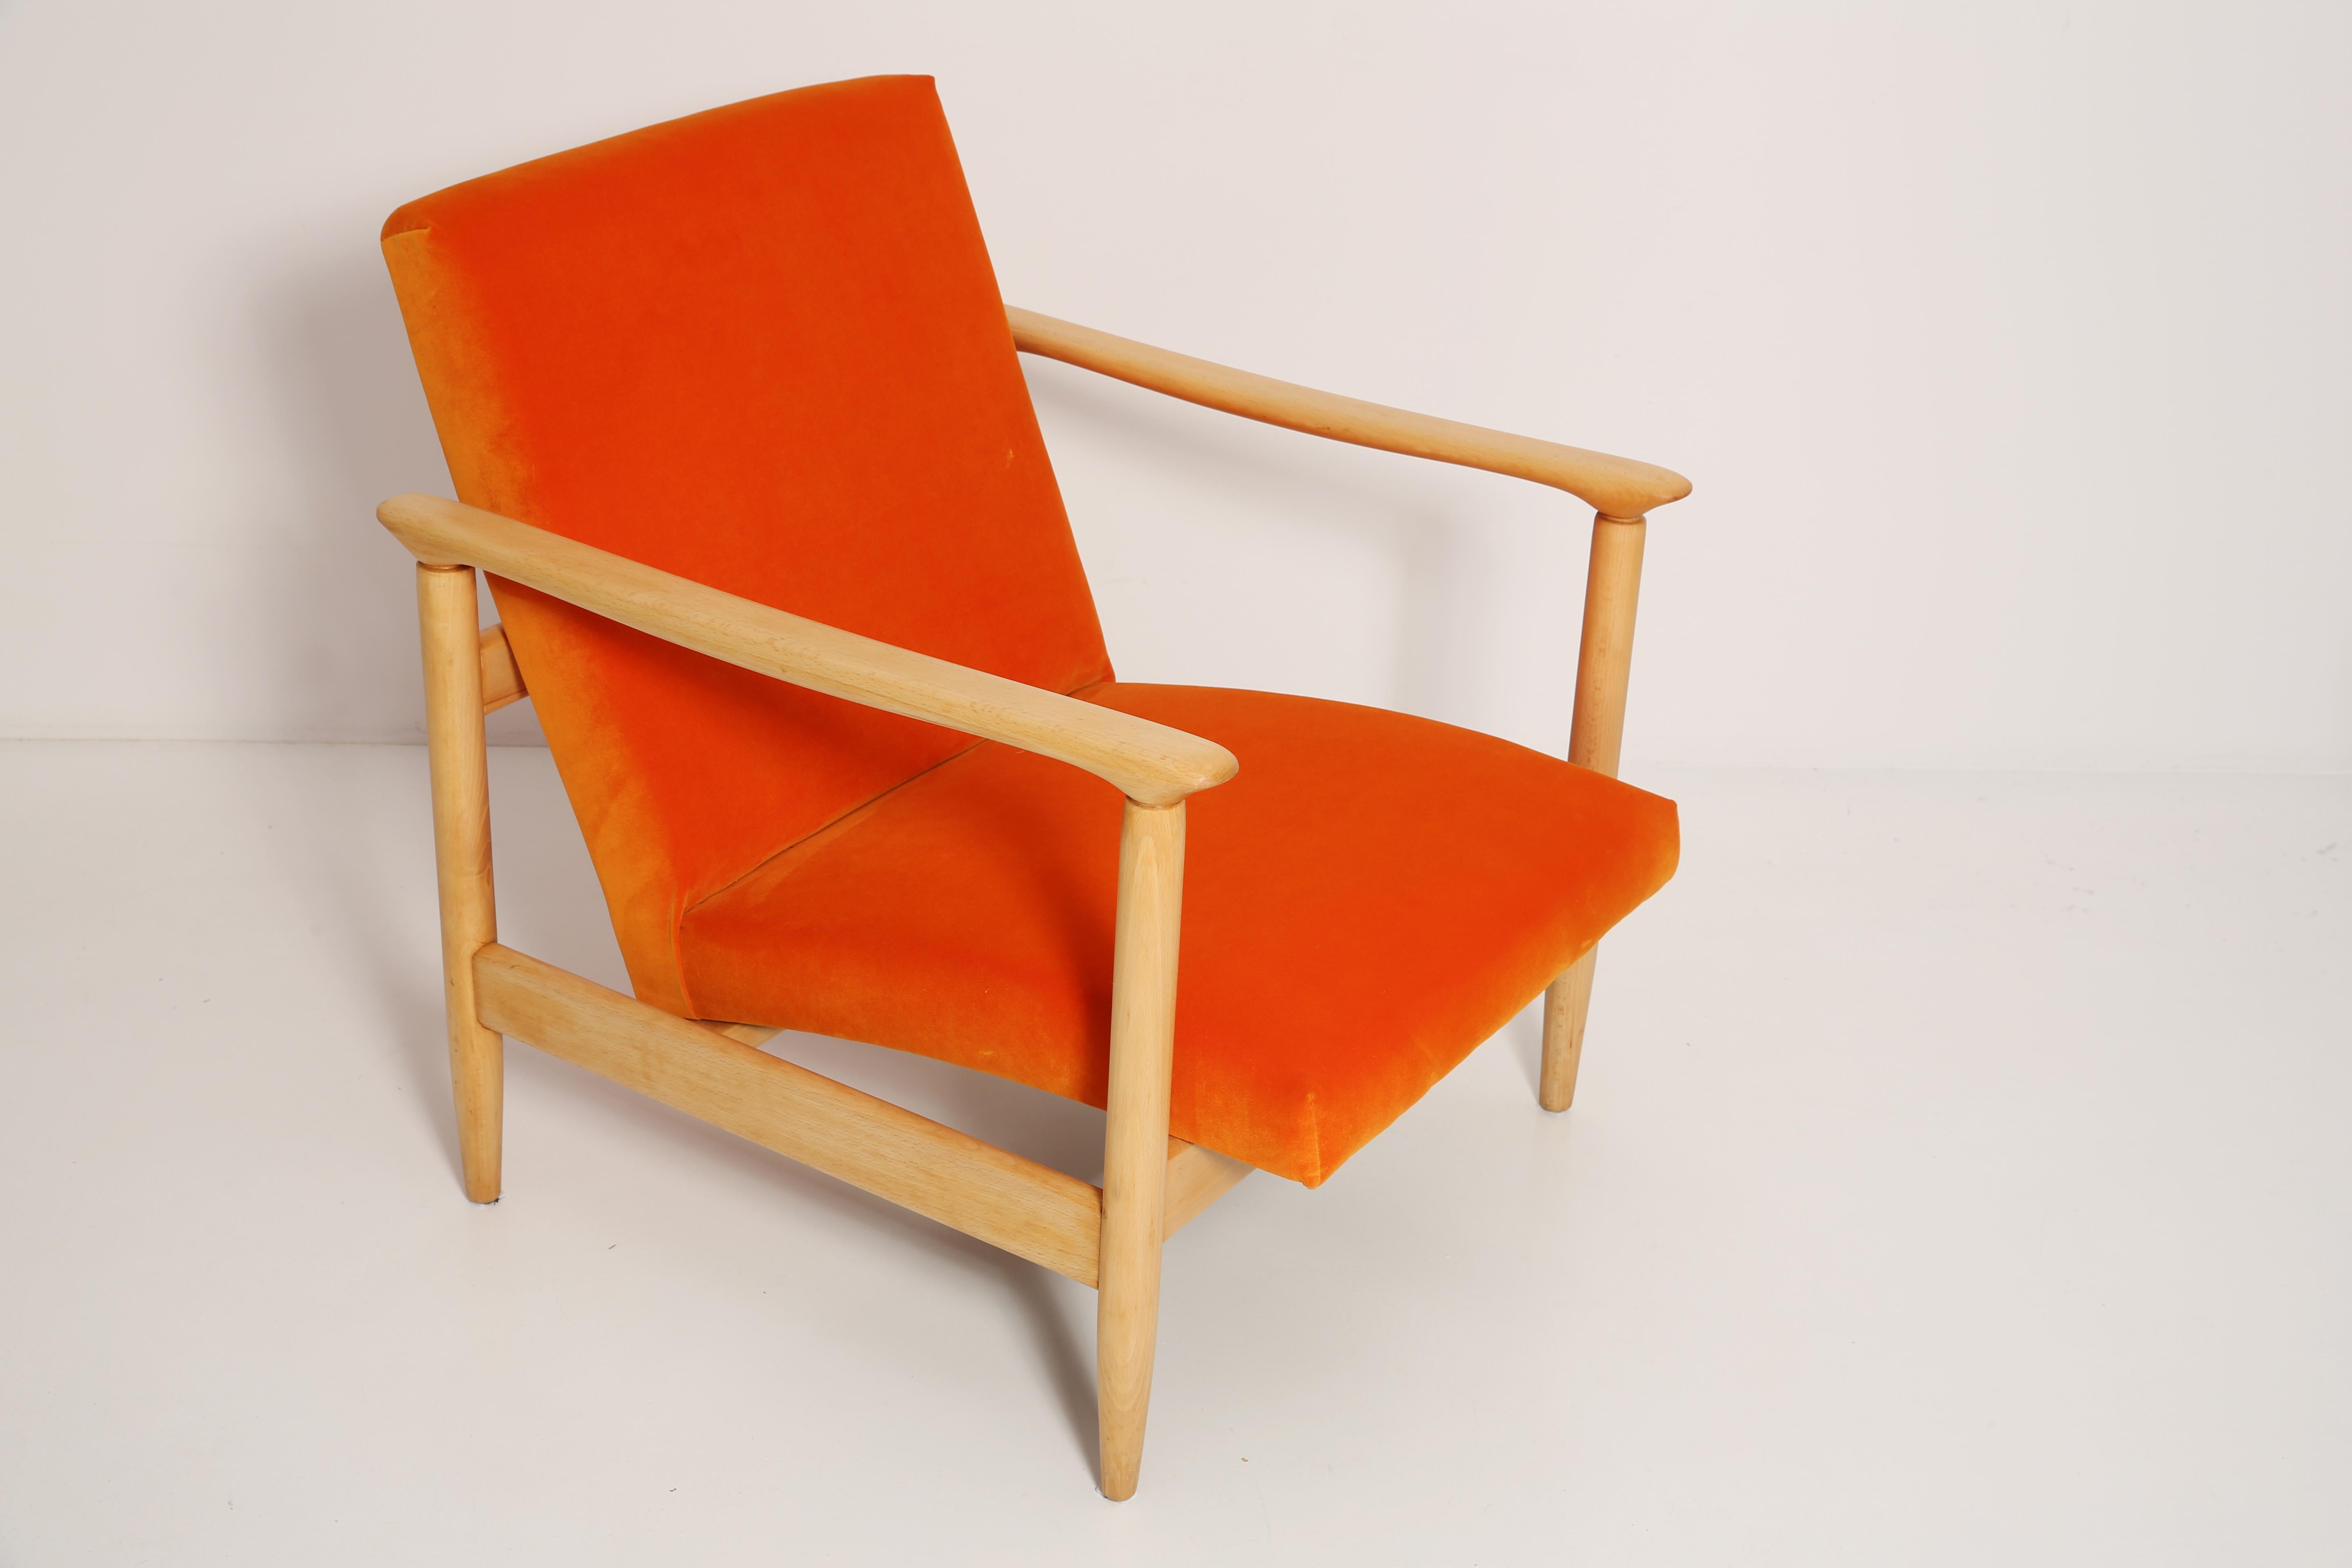 Schöne leuchtend orangefarbene Samtsessel GFM-142, entworfen von Edmund Homa, einem polnischen Architekten, Designer von Industriedesign und Innenarchitektur, Professor an der Akademie der Schönen Künste in Gdansk. 

Der Sessel wurde in den 1960er